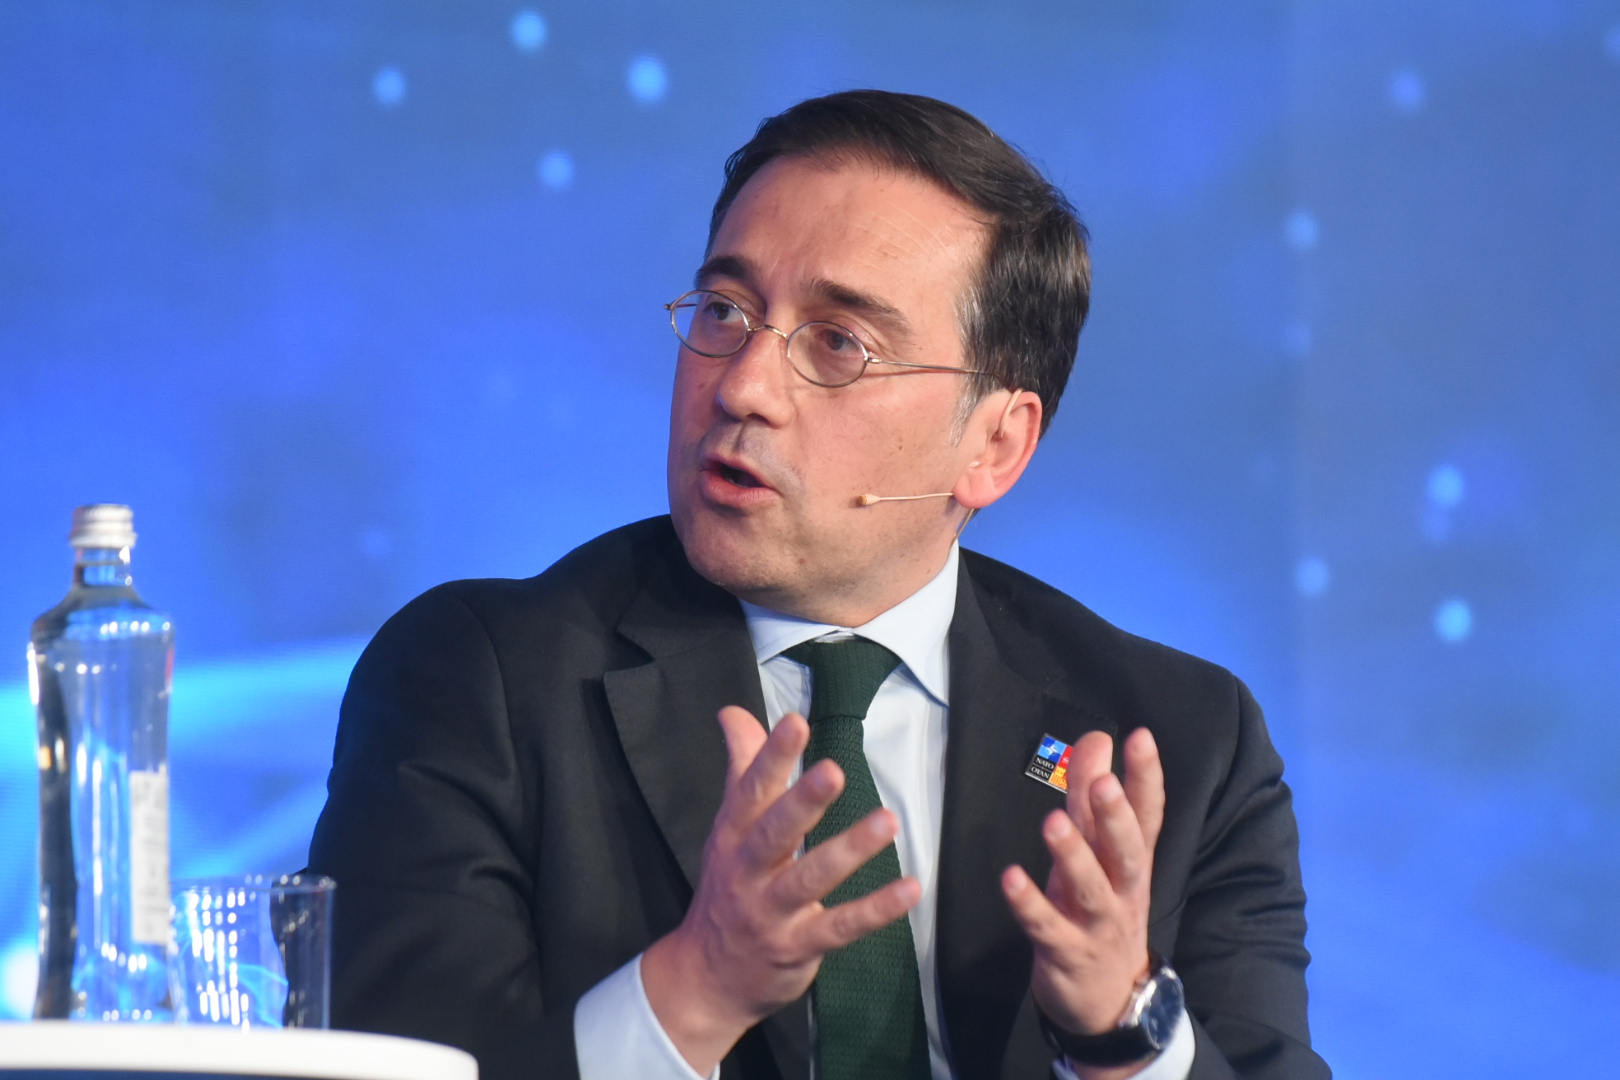 José Manuel Albares, Minister of Foreign Affairs, Spain. 2022 NATO Public Forum